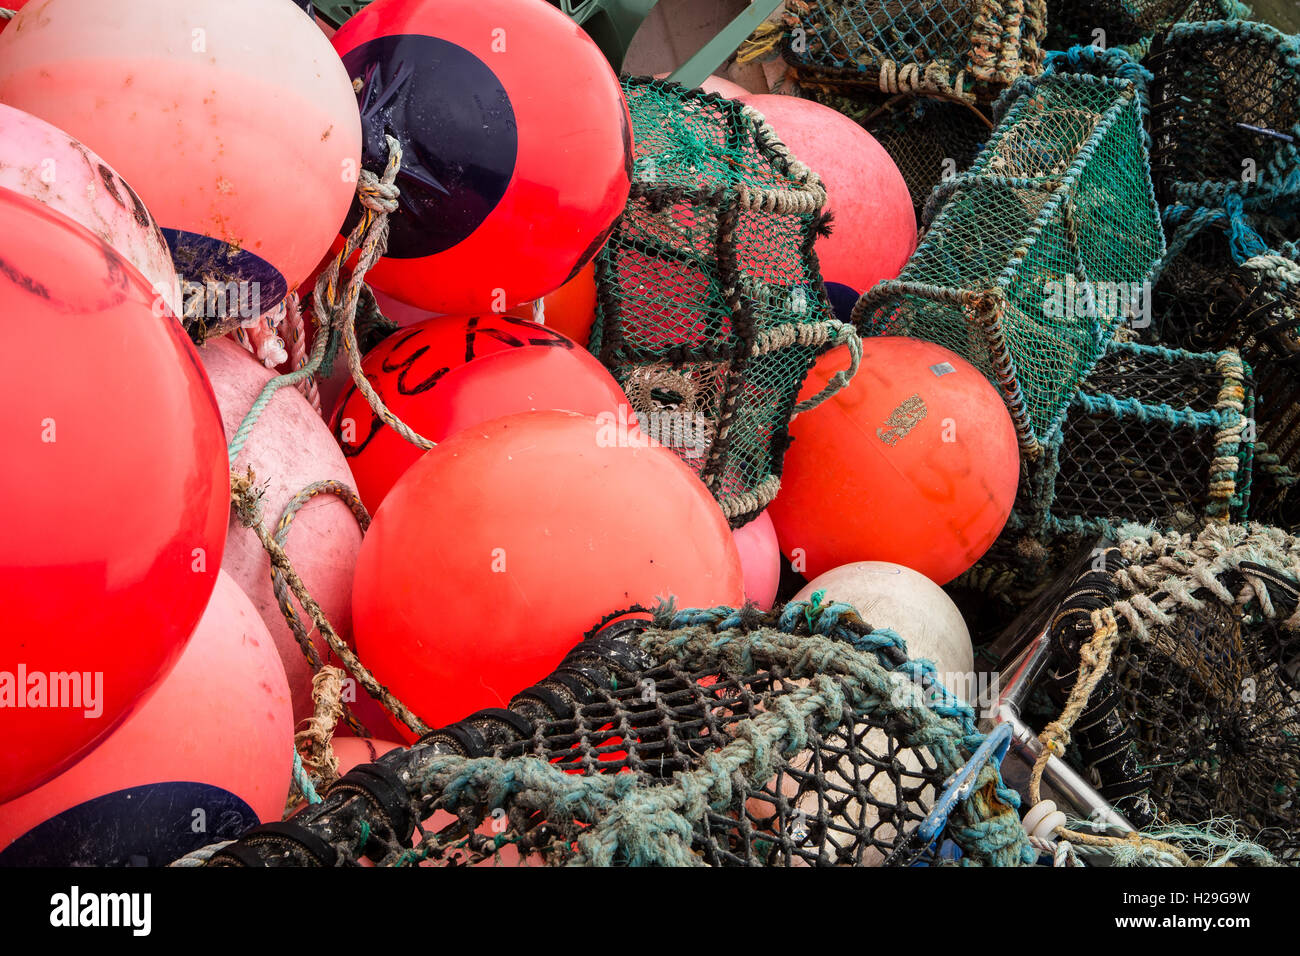 Un montón enmarañada de naranja/rojo brillante y flota pesquera creels Foto de stock